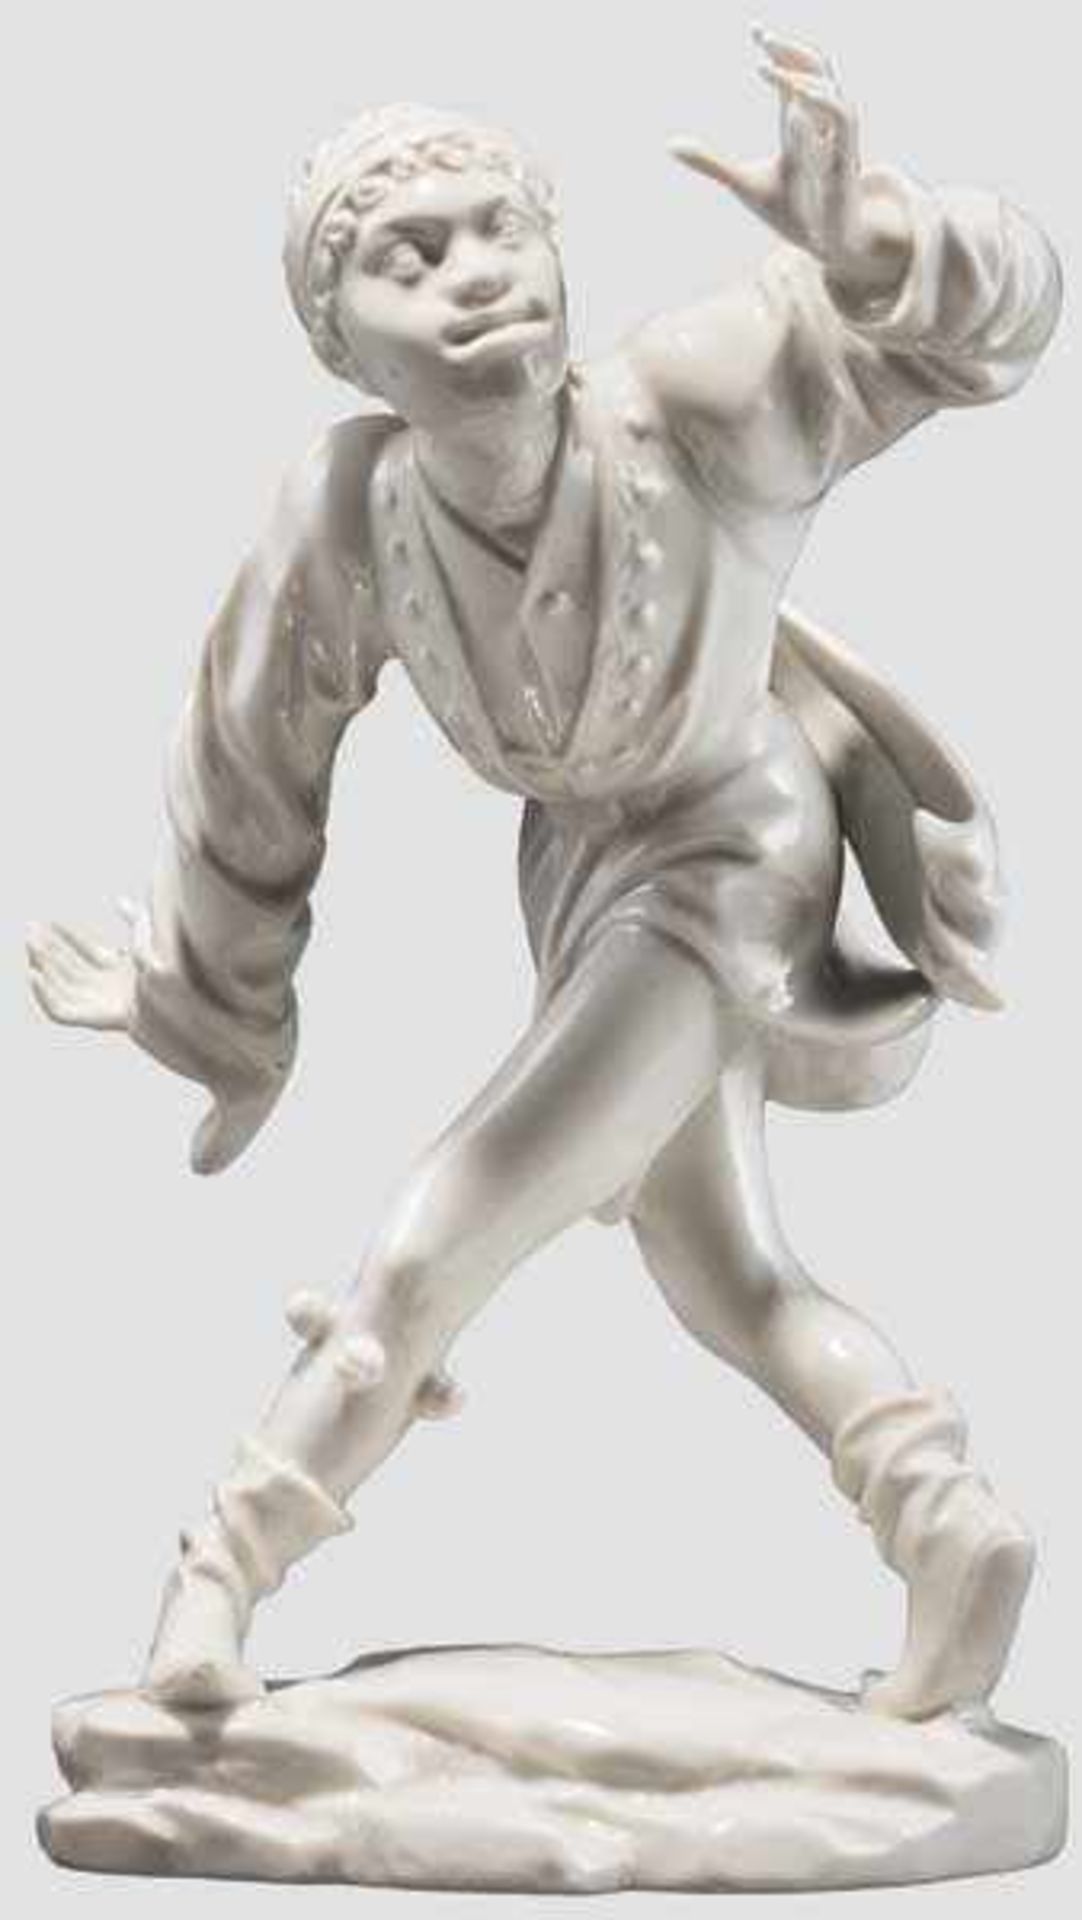 Der Mohr Weiße, glasierte Porzellanfigur aus der Serie der Moriskentänzer. Im Boden gepresste